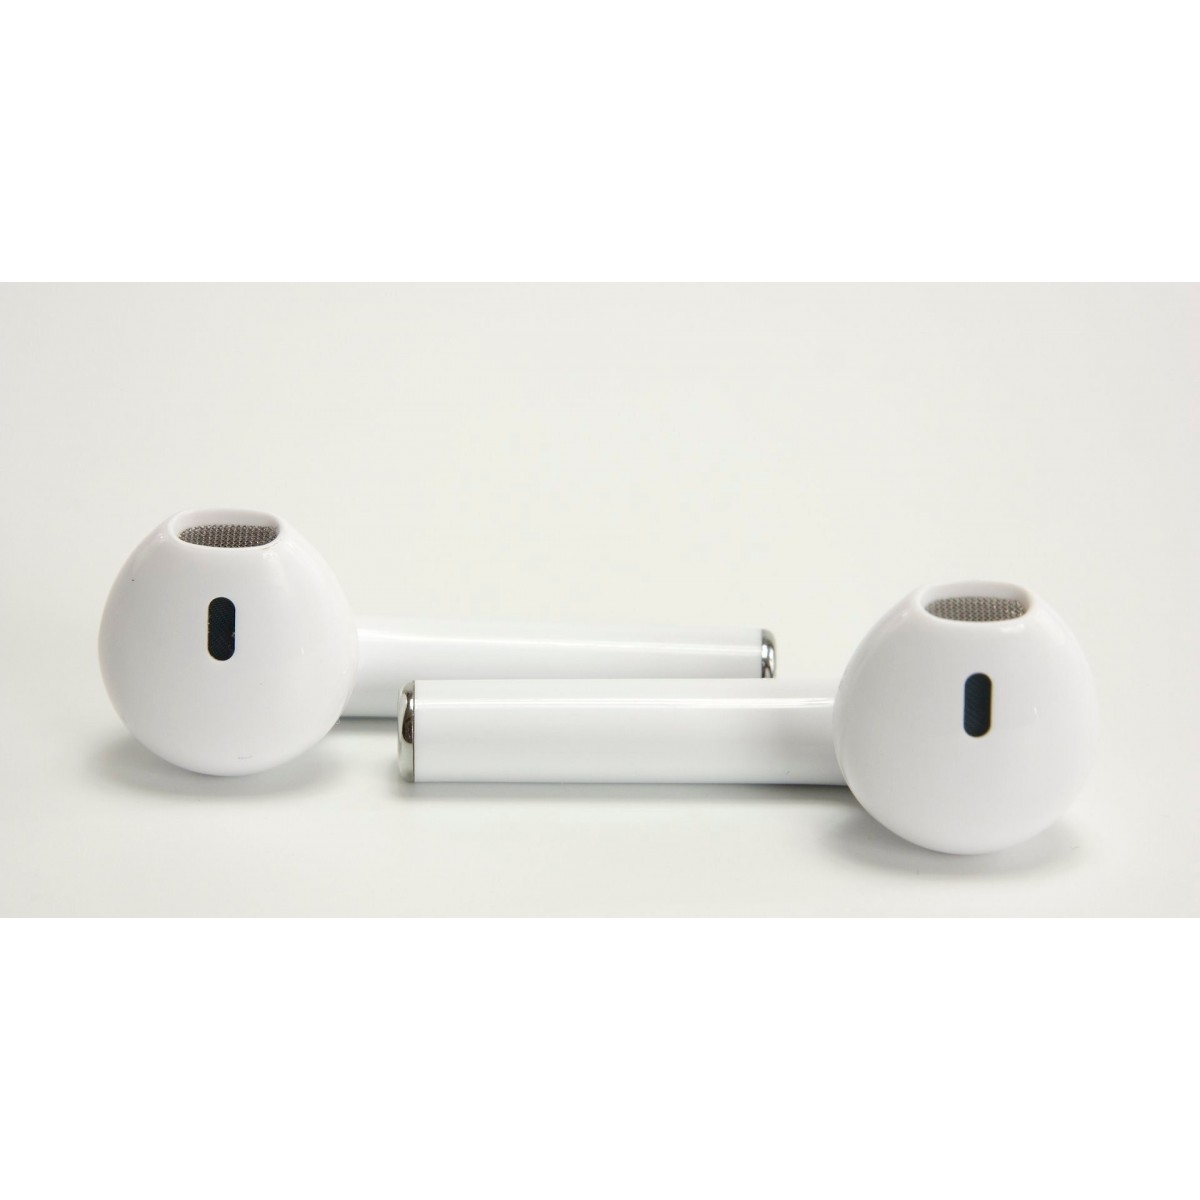 Écouteurs blanc sans fil bluetooth TWS i12